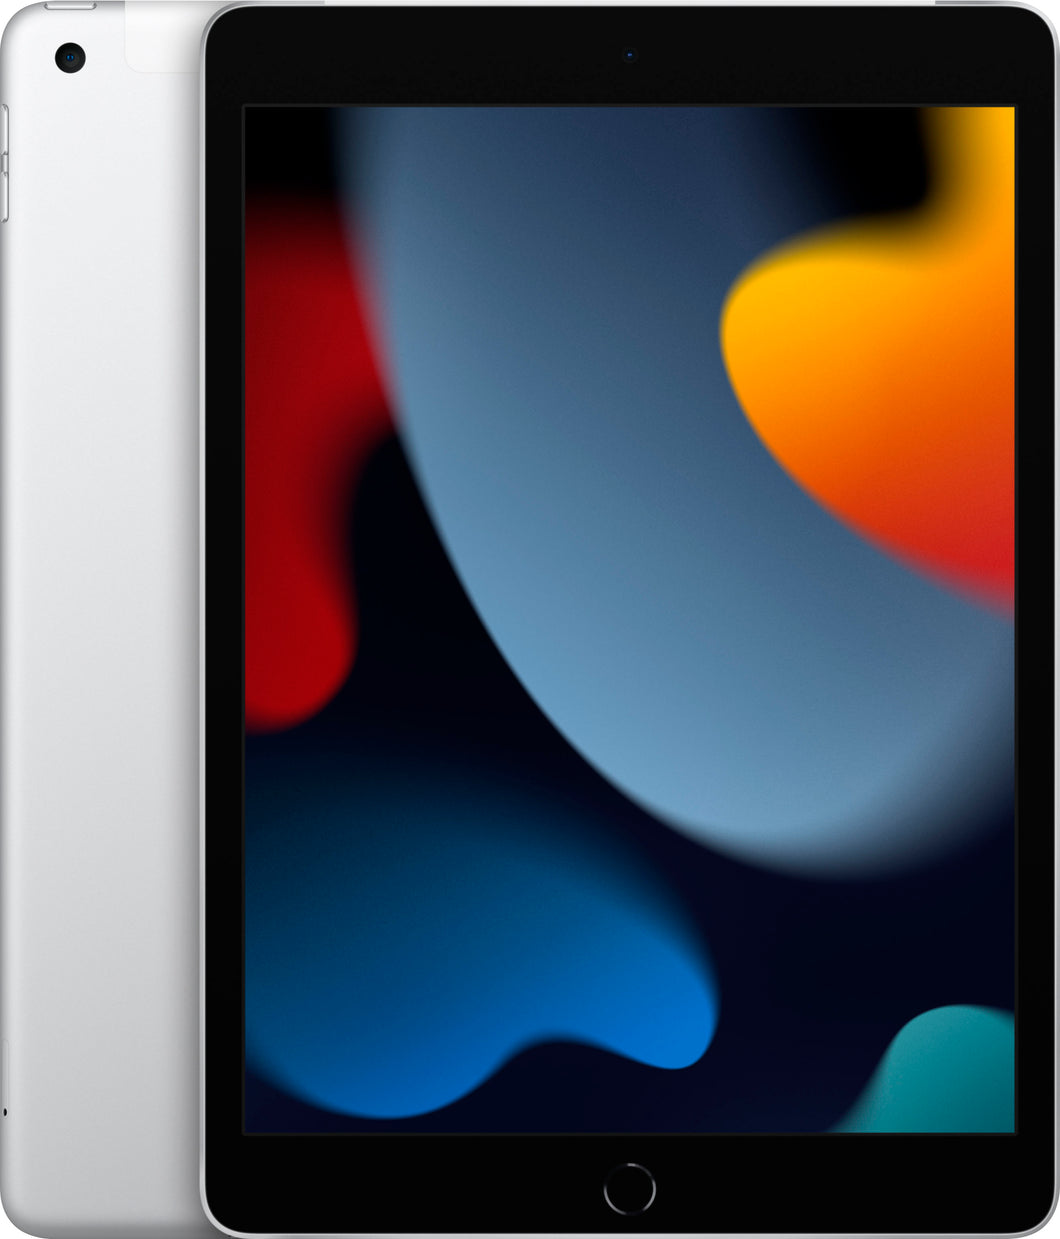 Apple iPad 9th Gen 64GB Wi-Fi + Cellular 10.2in Silver - MK673LL/A